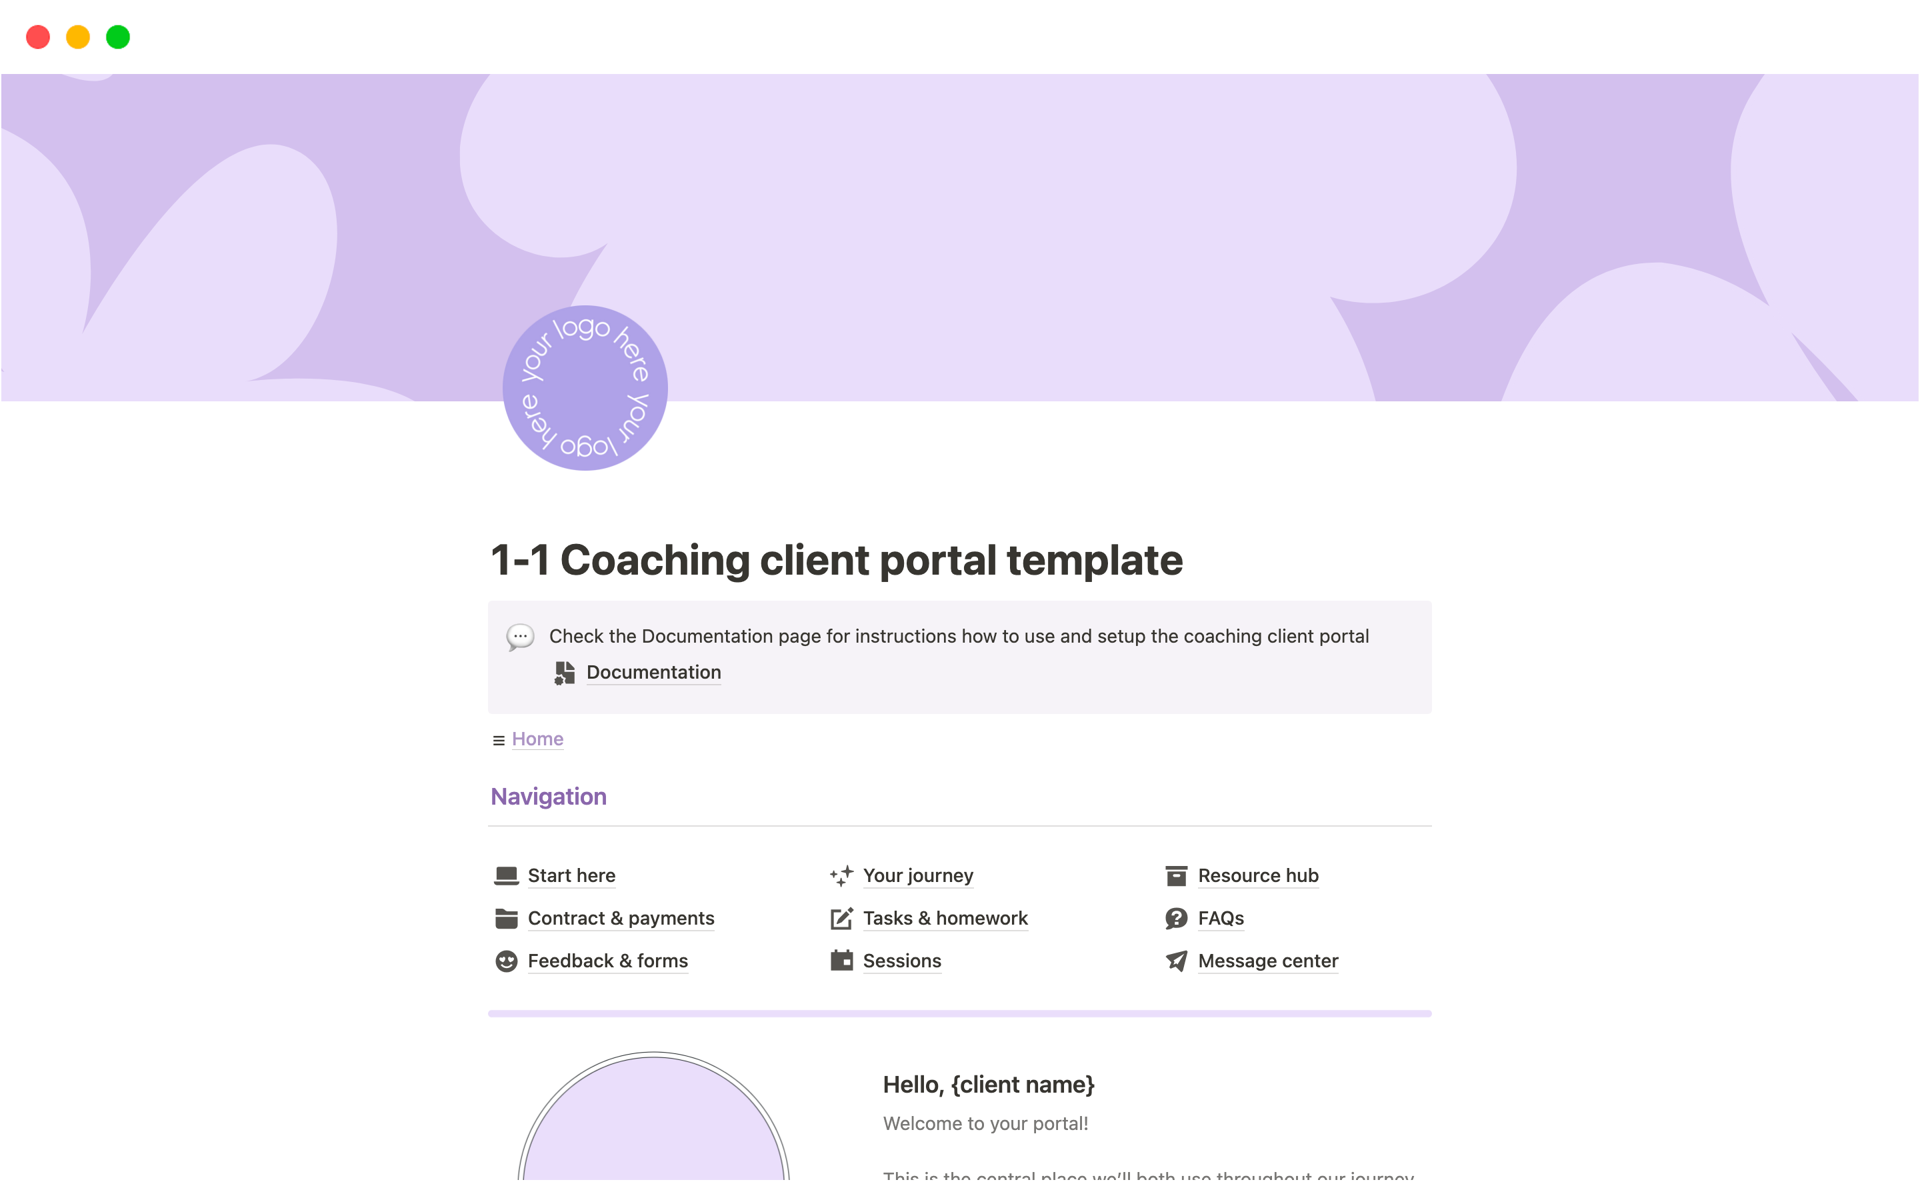 Vista previa de una plantilla para 1-1 Coaching client portal